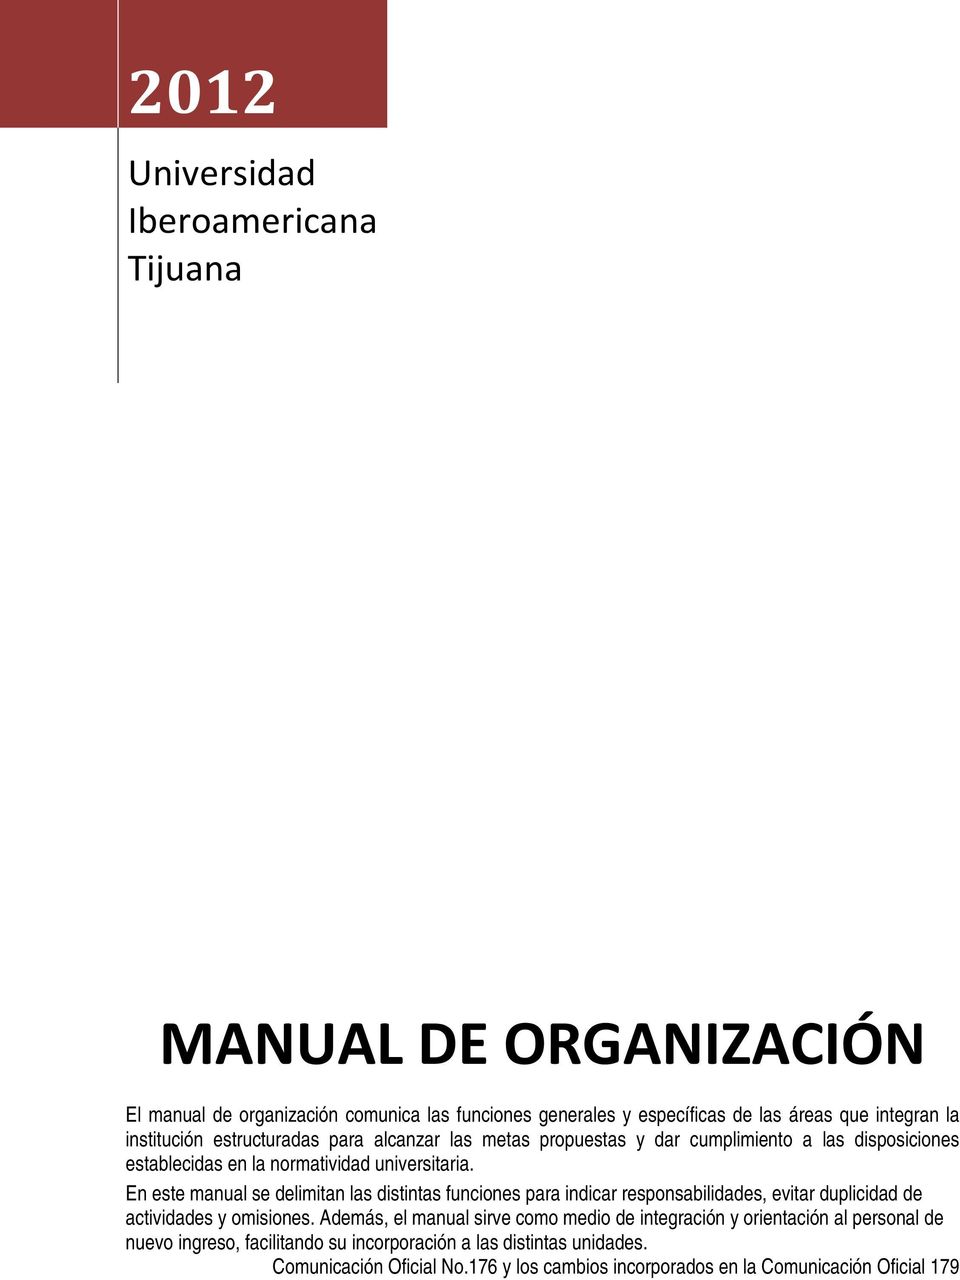 En este manual se delimitan las distintas funciones para indicar responsabilidades, evitar duplicidad de actividades y omisiones.